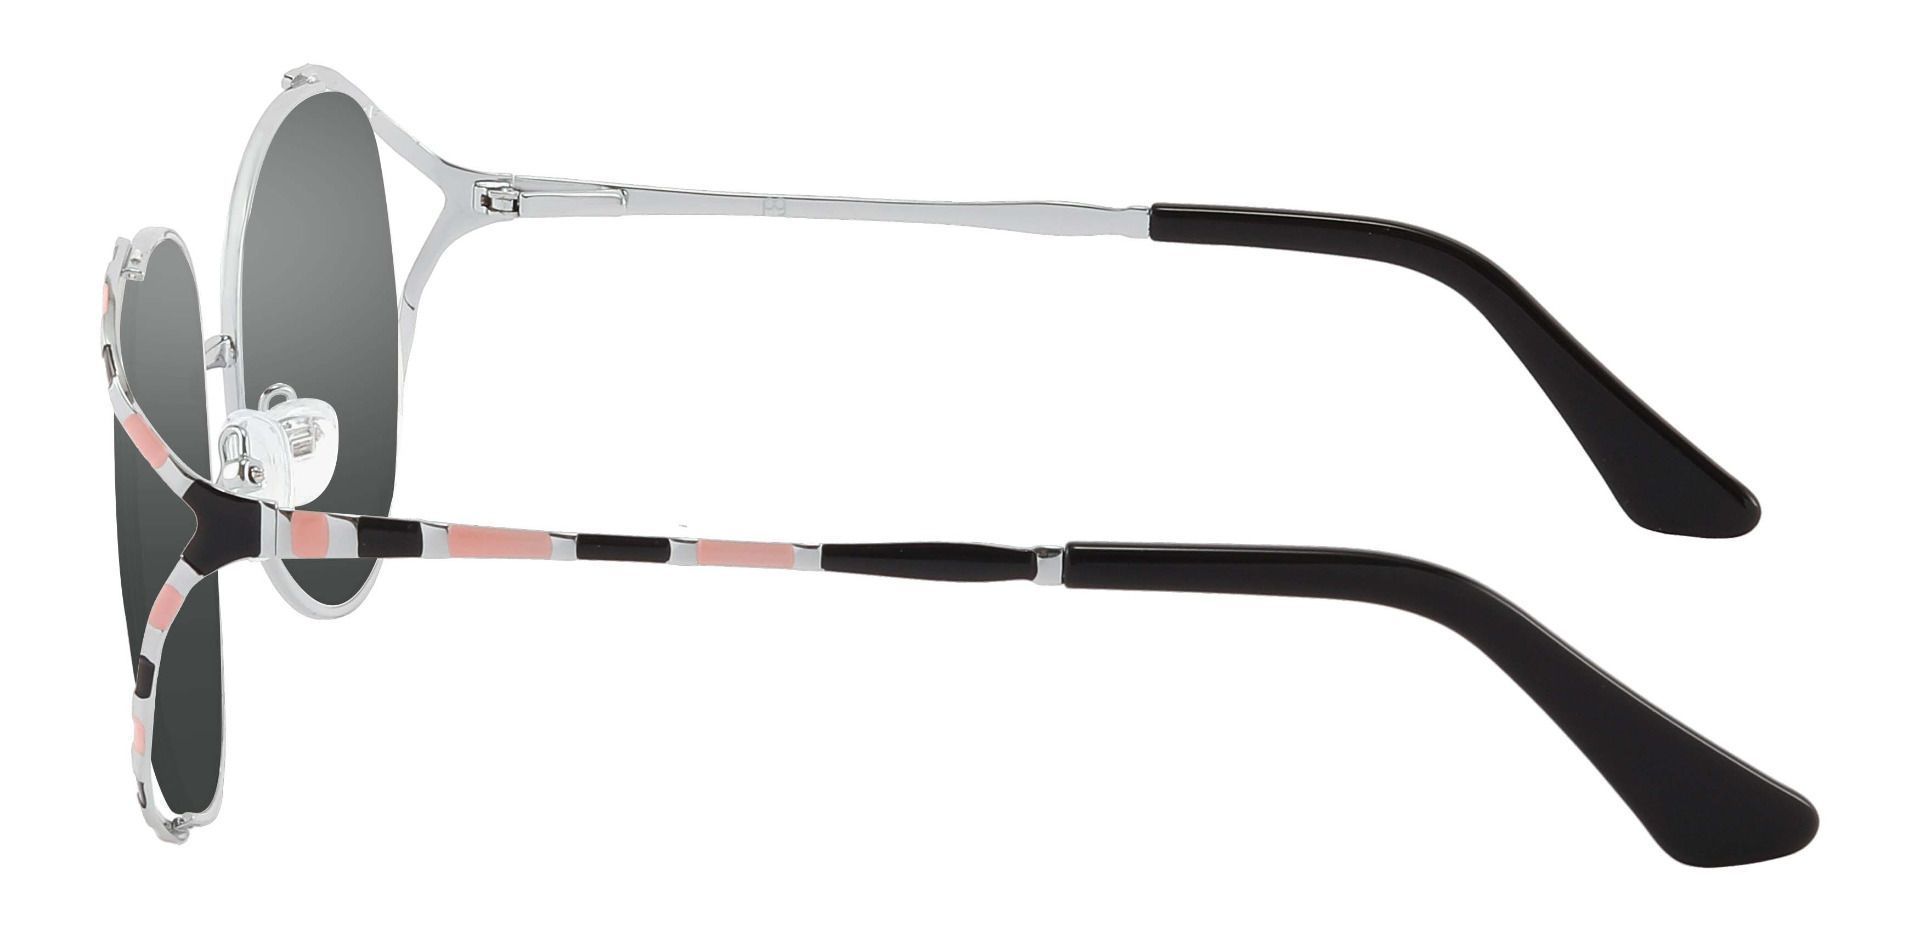 Dorothy Oval Progressive Sunglasses - Black Frame With Gray Lenses